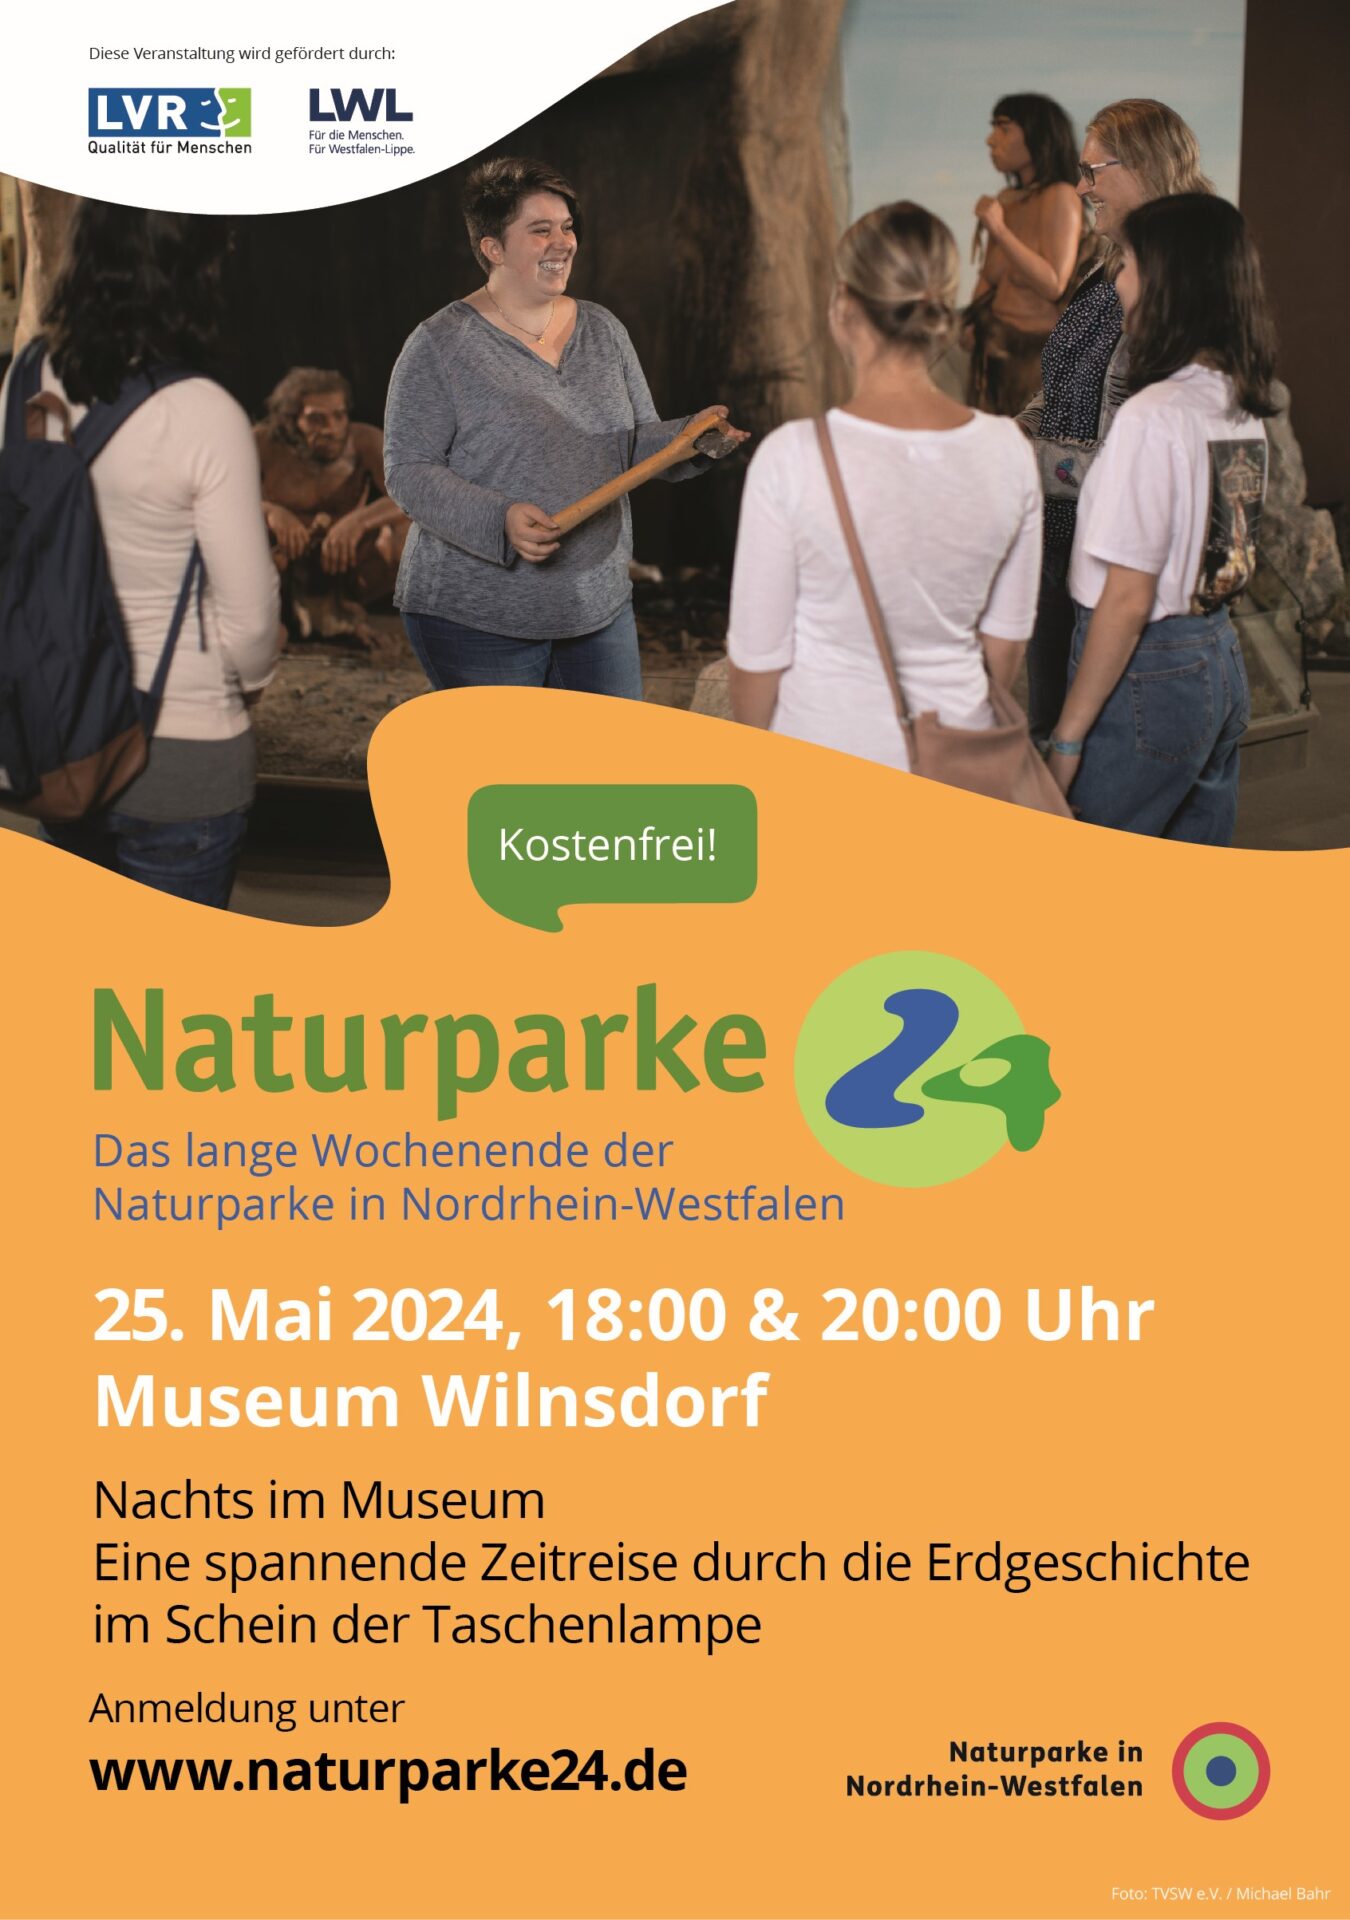 Plakat "Naturparke24" für das lange Wochenende der Naturparke in NRW